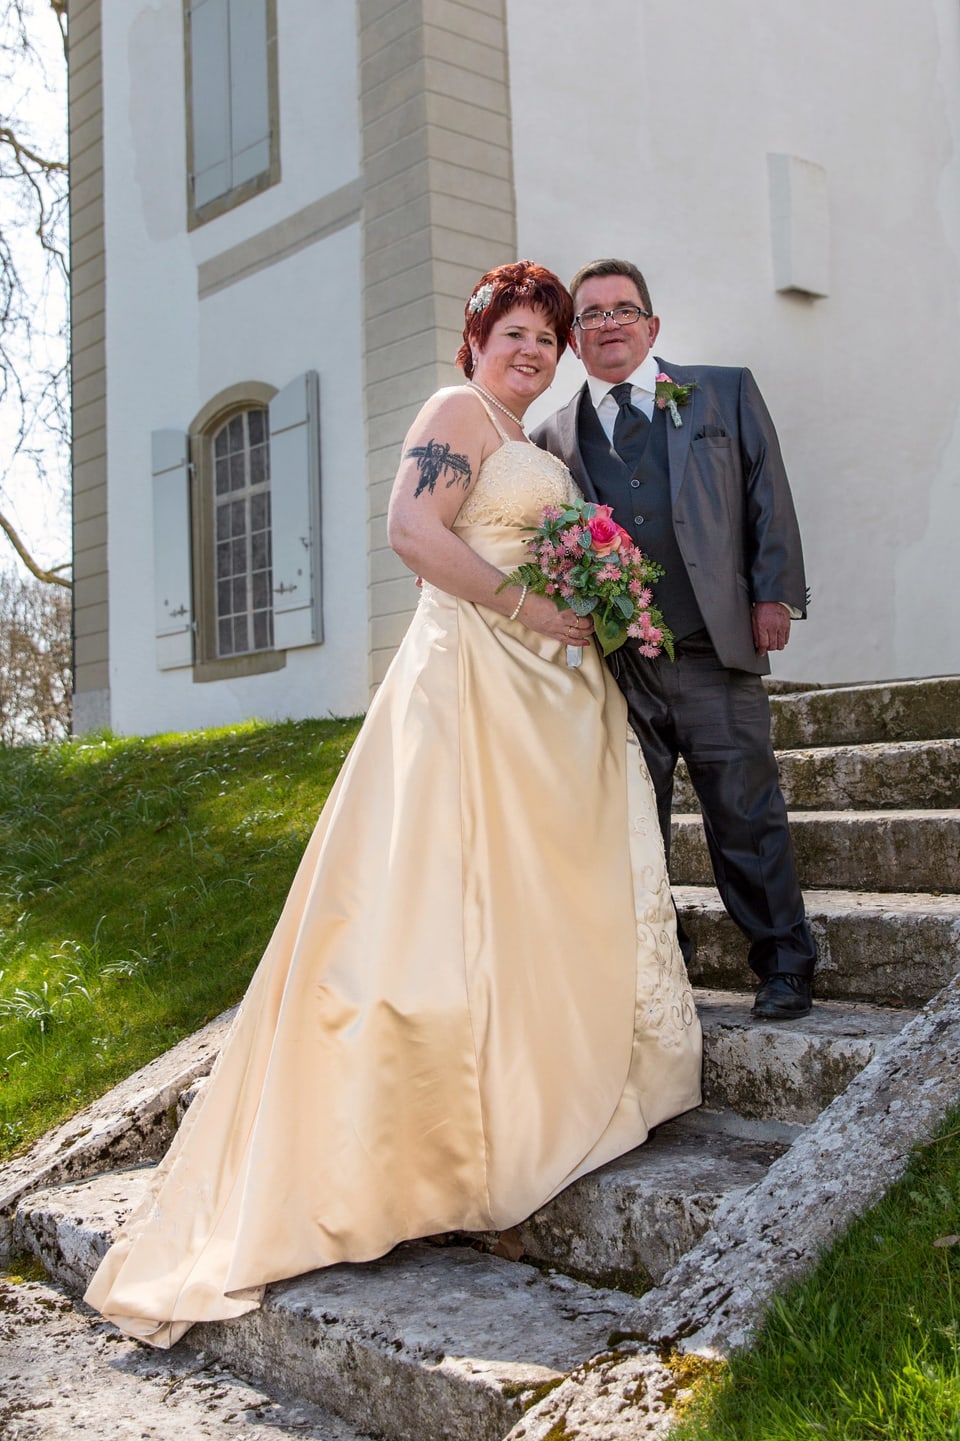 Das Brautpaar, sie im cremefarbenen Kleid, roten Haaren und rosa Blumenstrauss, er im Silvergrauen Anzug, steht nebeneinander auf einer Treppe.